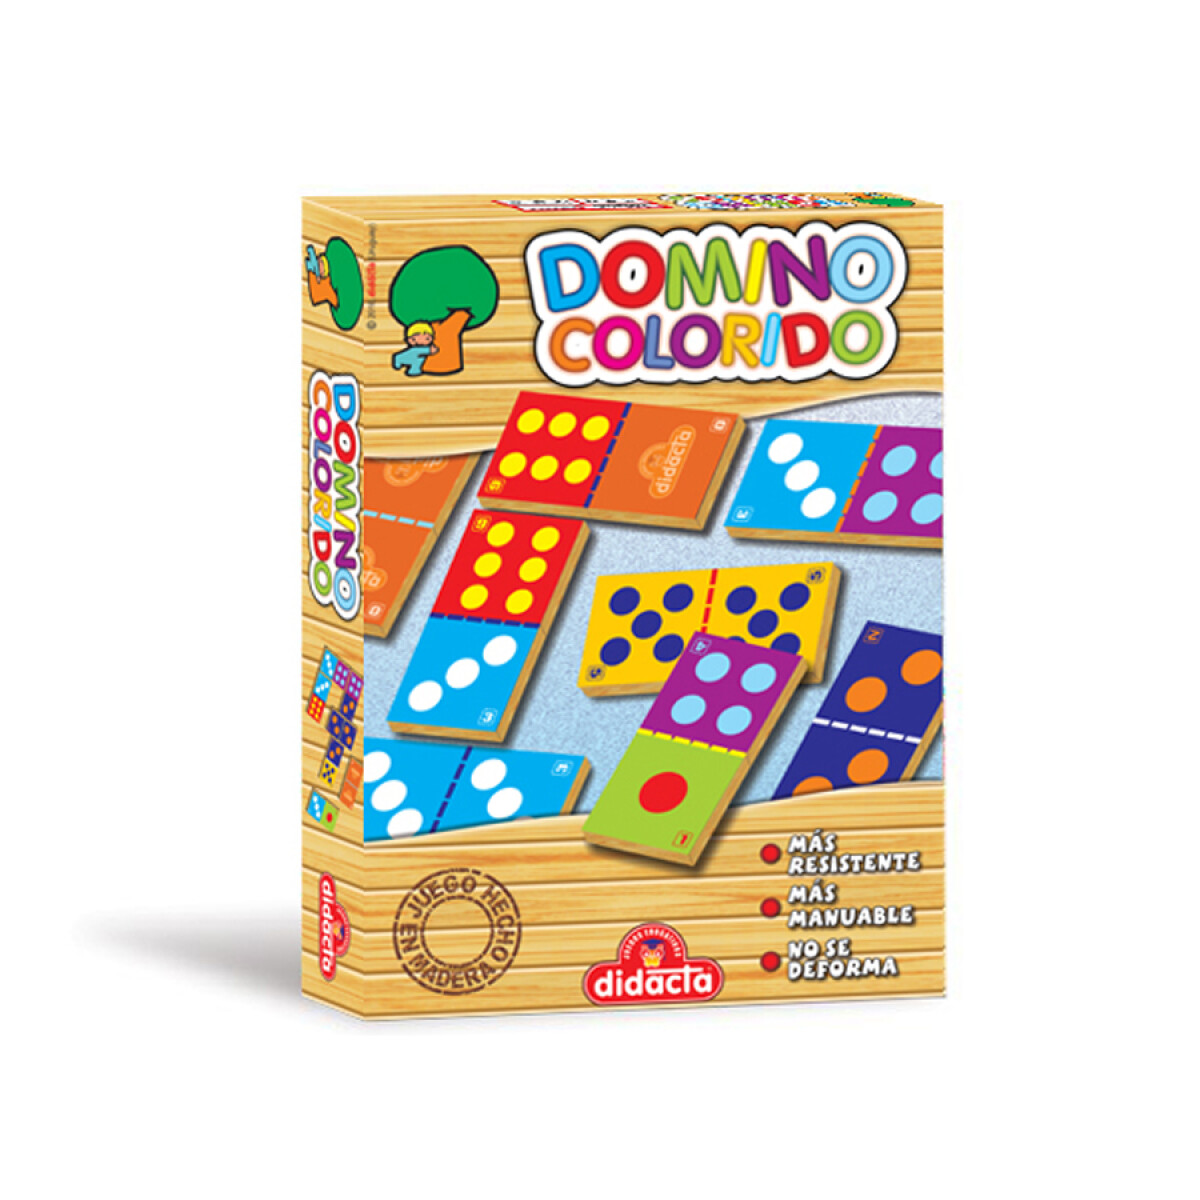 Domino Colorido Didacta Infatil Super Resistente - 001 